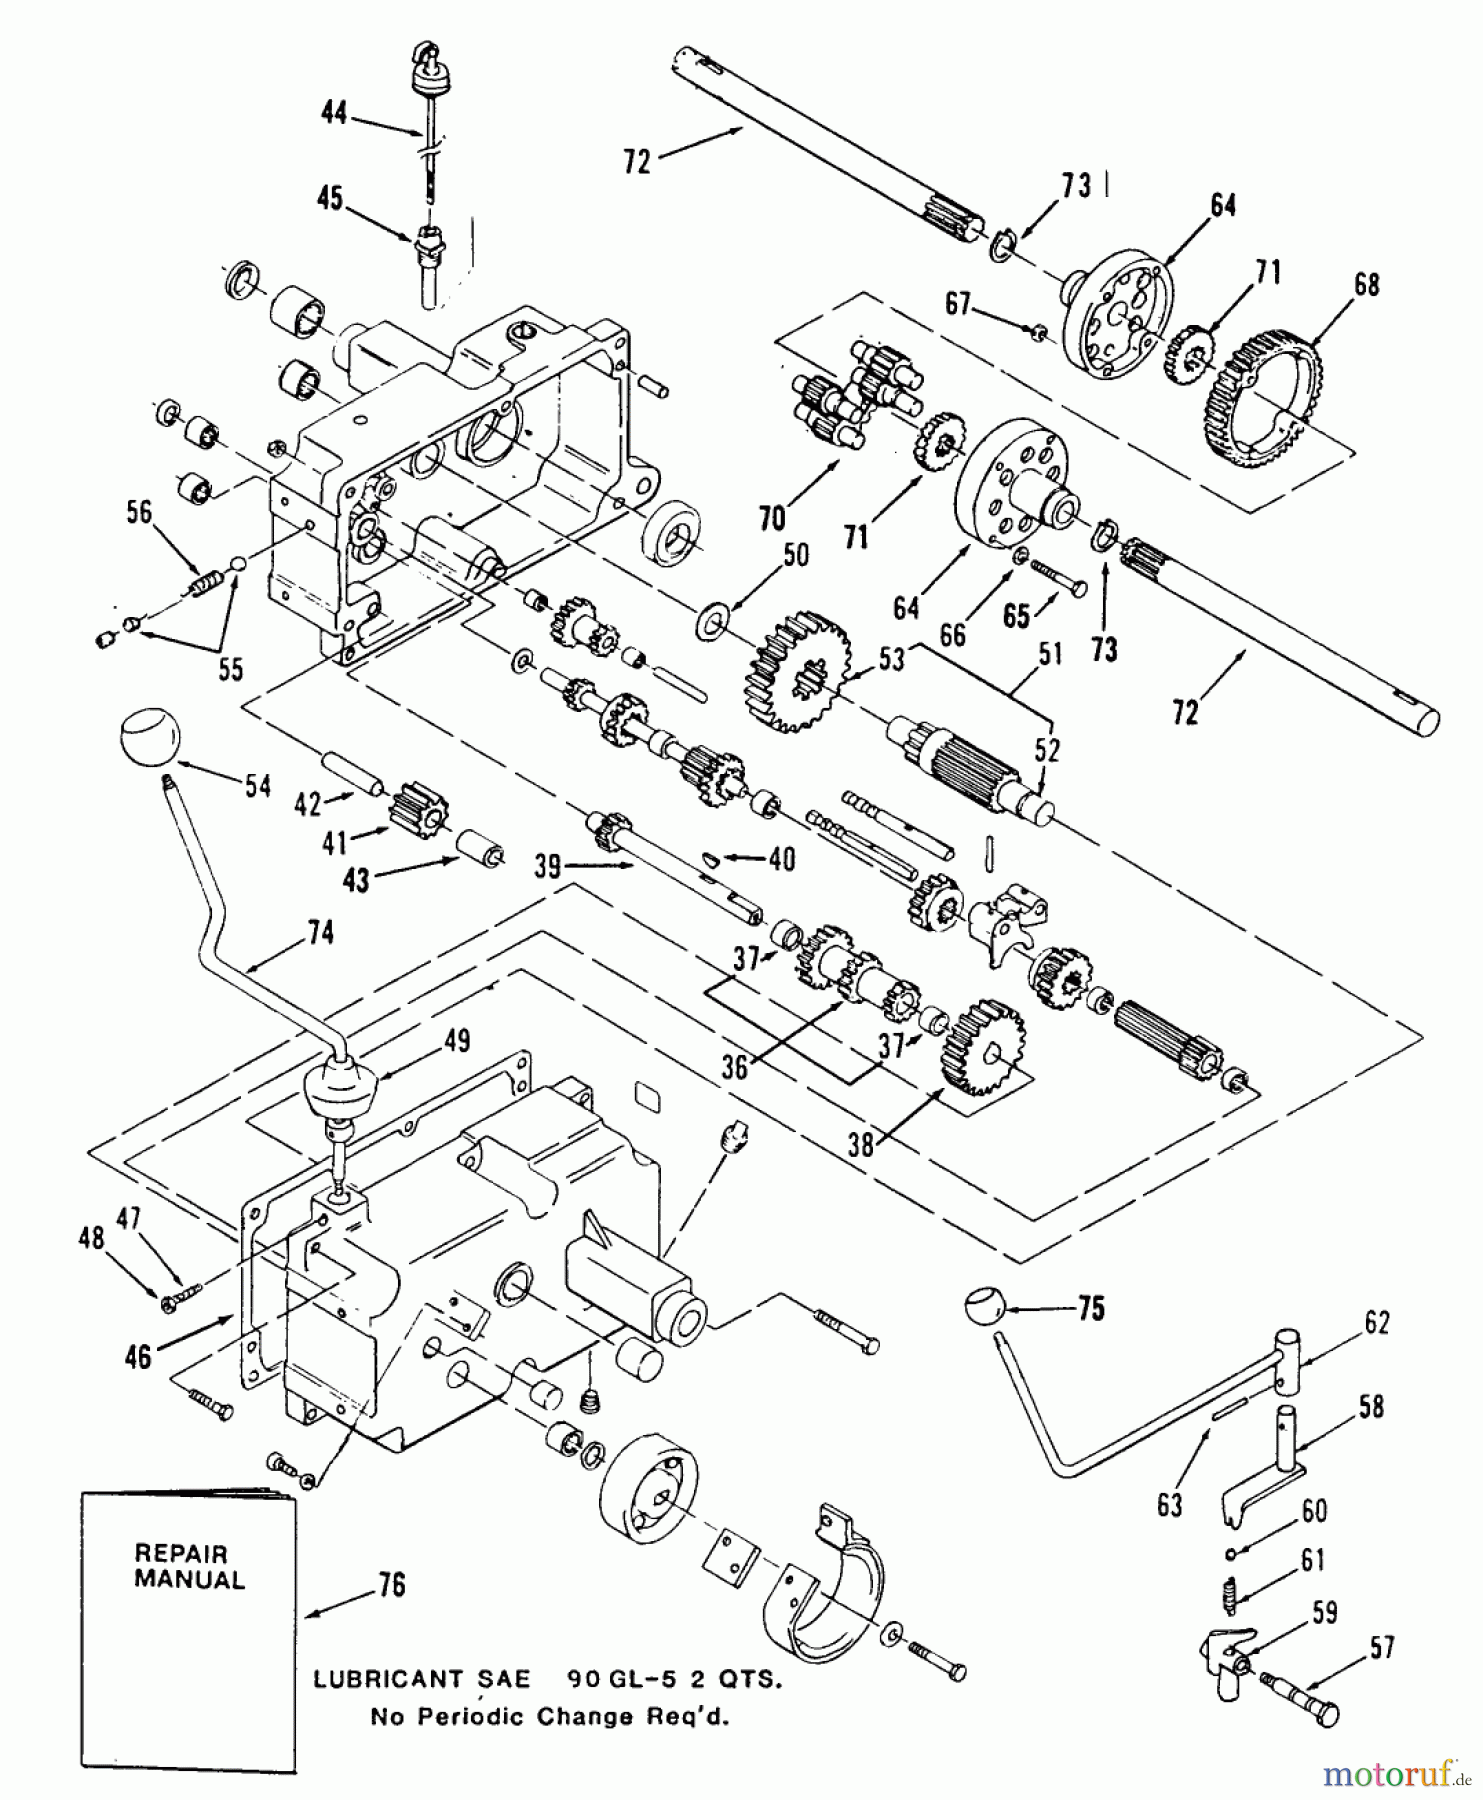  Toro Neu Mowers, Lawn & Garden Tractor Seite 2 R1-12K801 (312-8) - Toro 312-8 Garden Tractor, 1990 MECHANICAL TRANSMISSION-8-SPEED #2